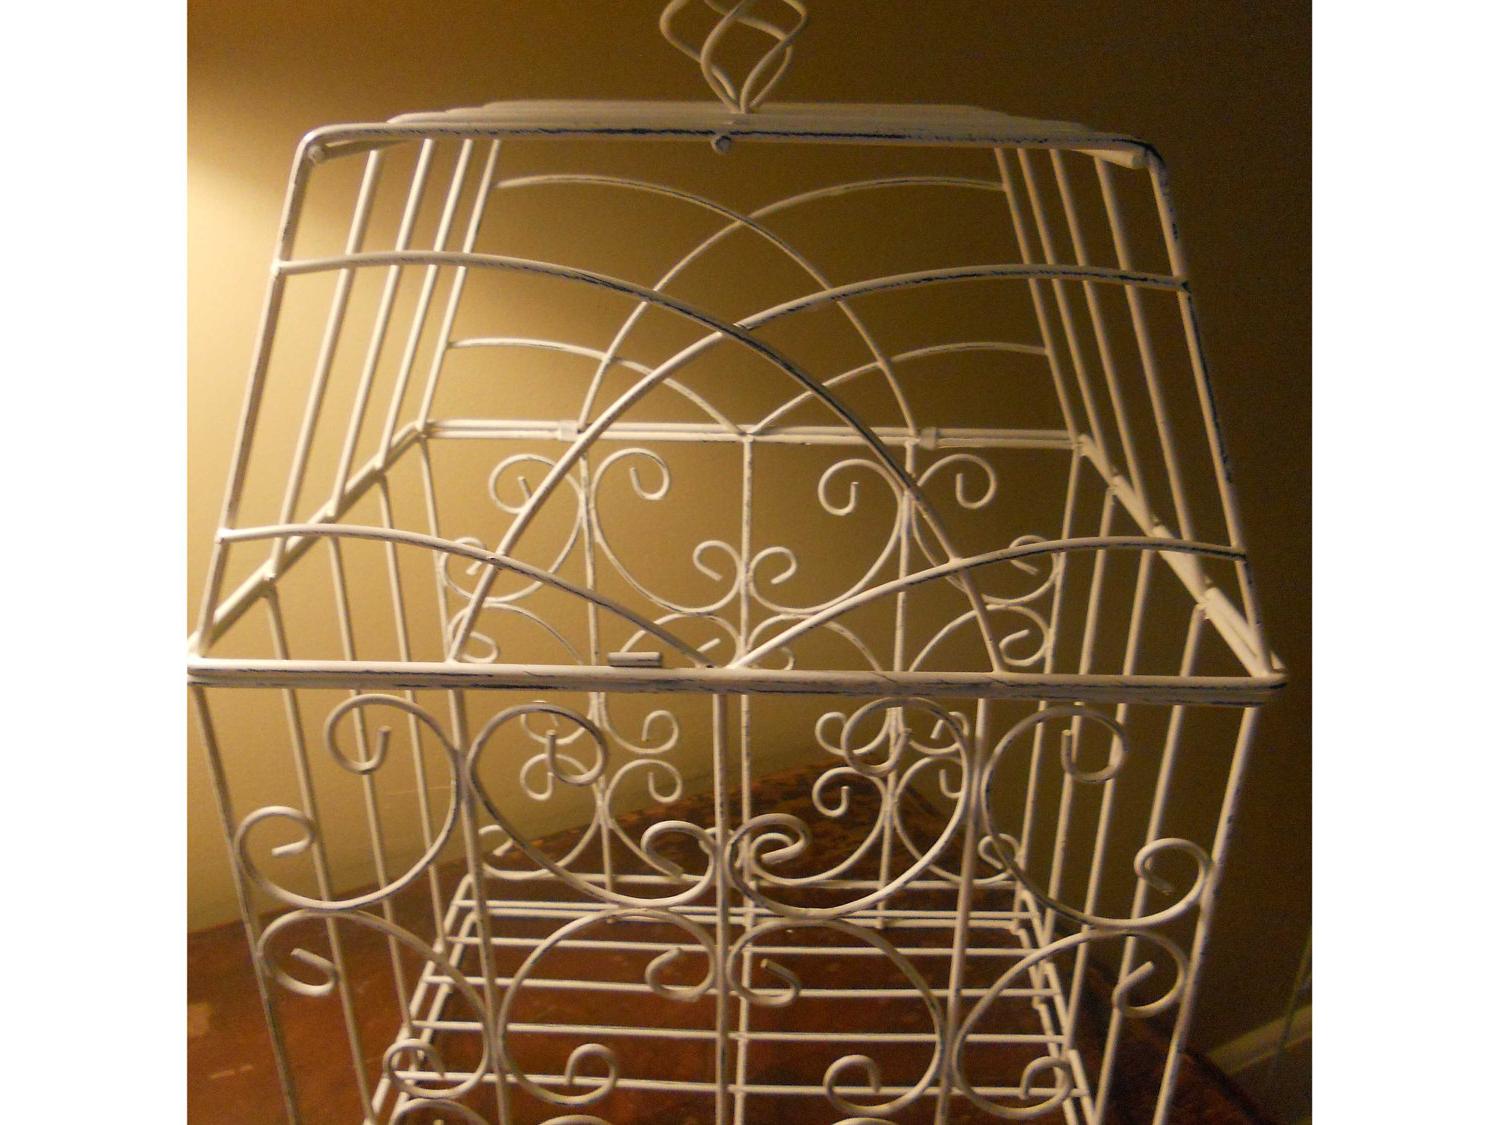 Vintage Decorative Bird Cage